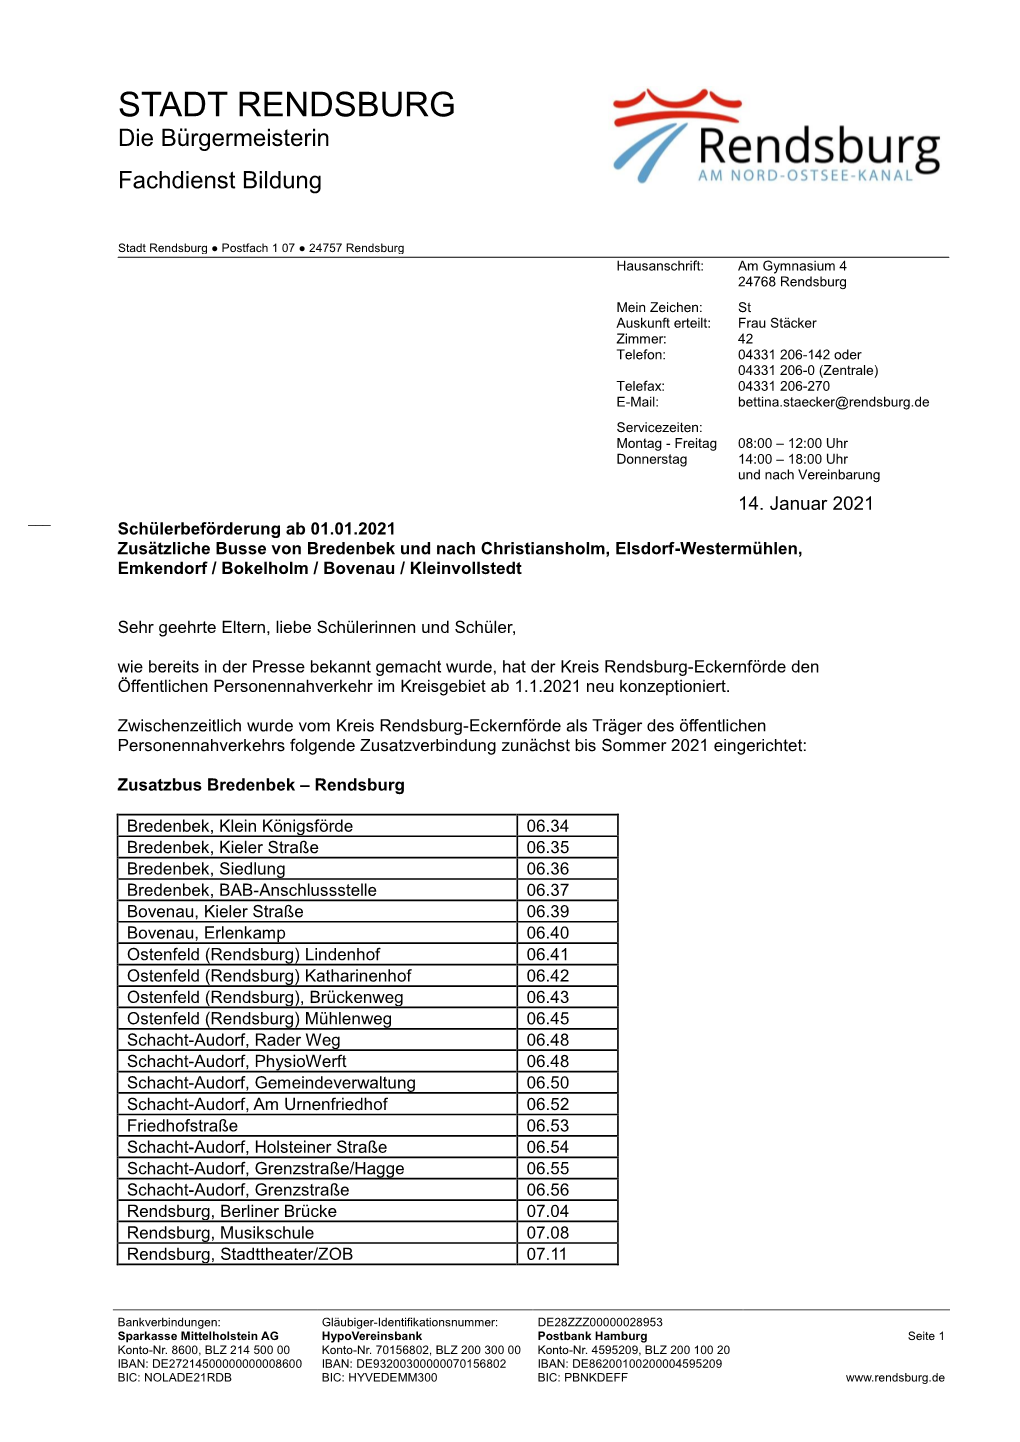 Schülerbeförderung Ab 01.01.2021 Zusätzliche Busse Von Bredenbek Und Nach Christiansholm, Elsdorf-Westermühlen, Emkendorf / Bokelholm / Bovenau / Kleinvollstedt